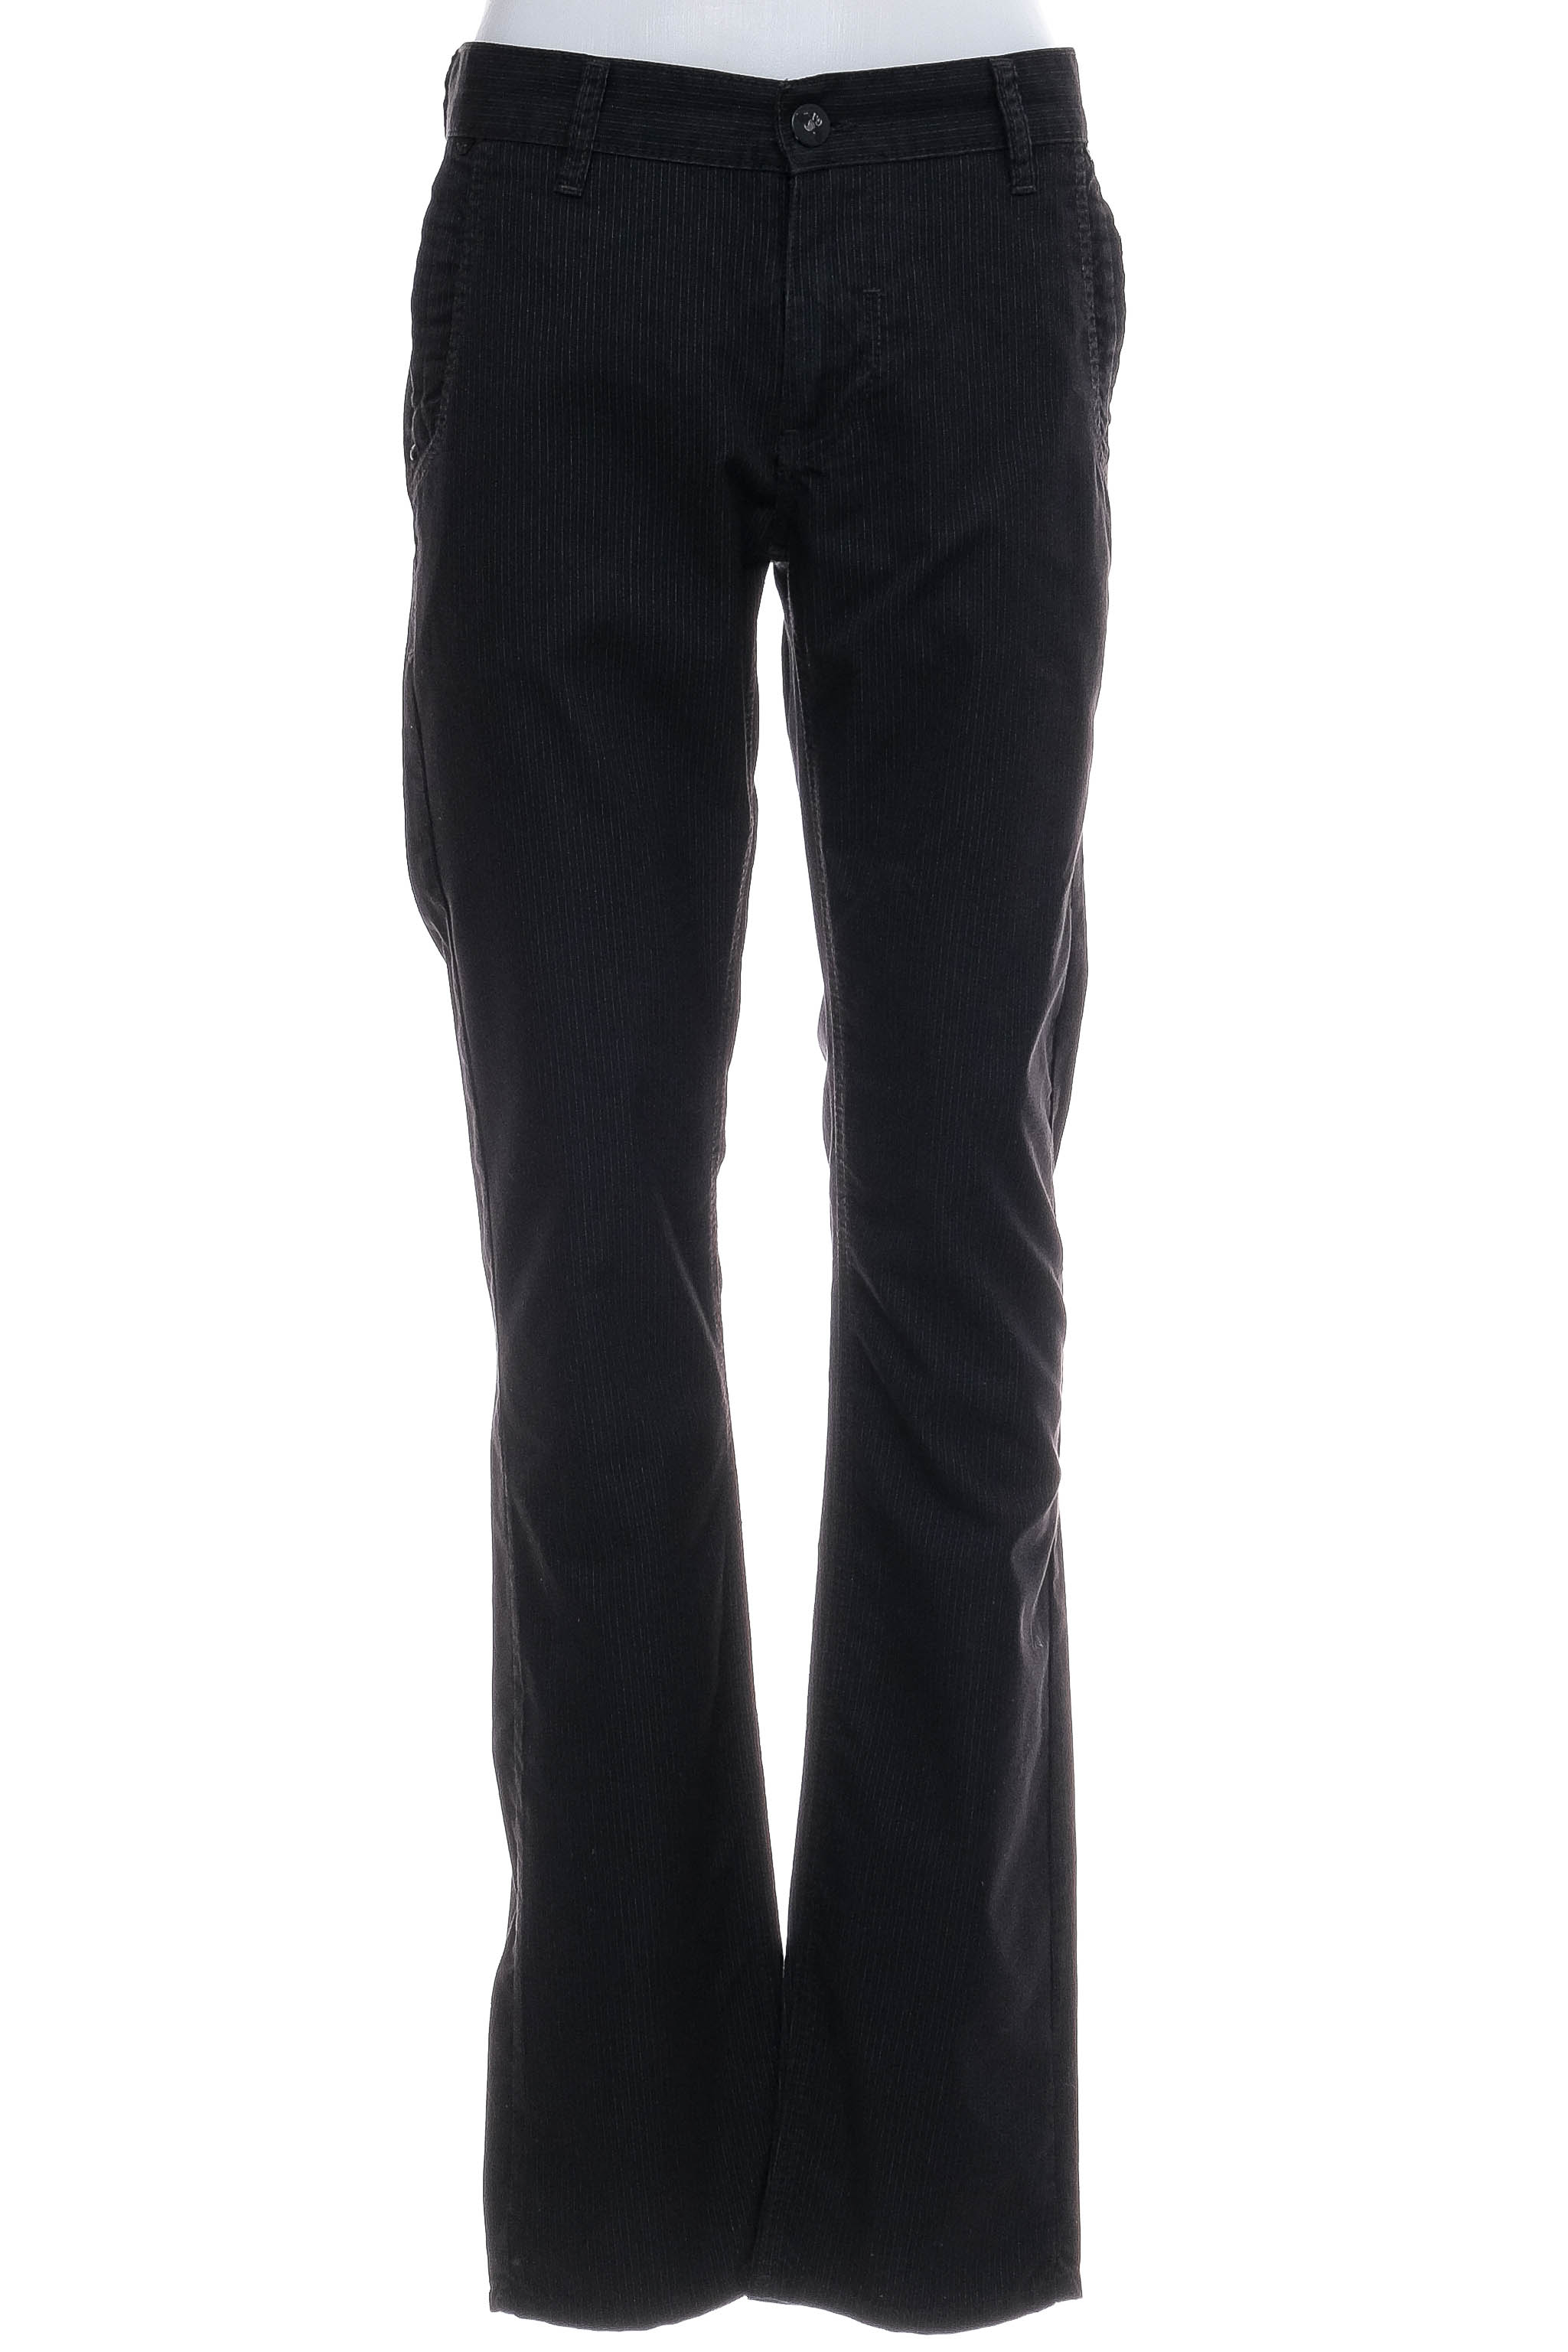 Мъжки панталон - Armani Jeans - 0